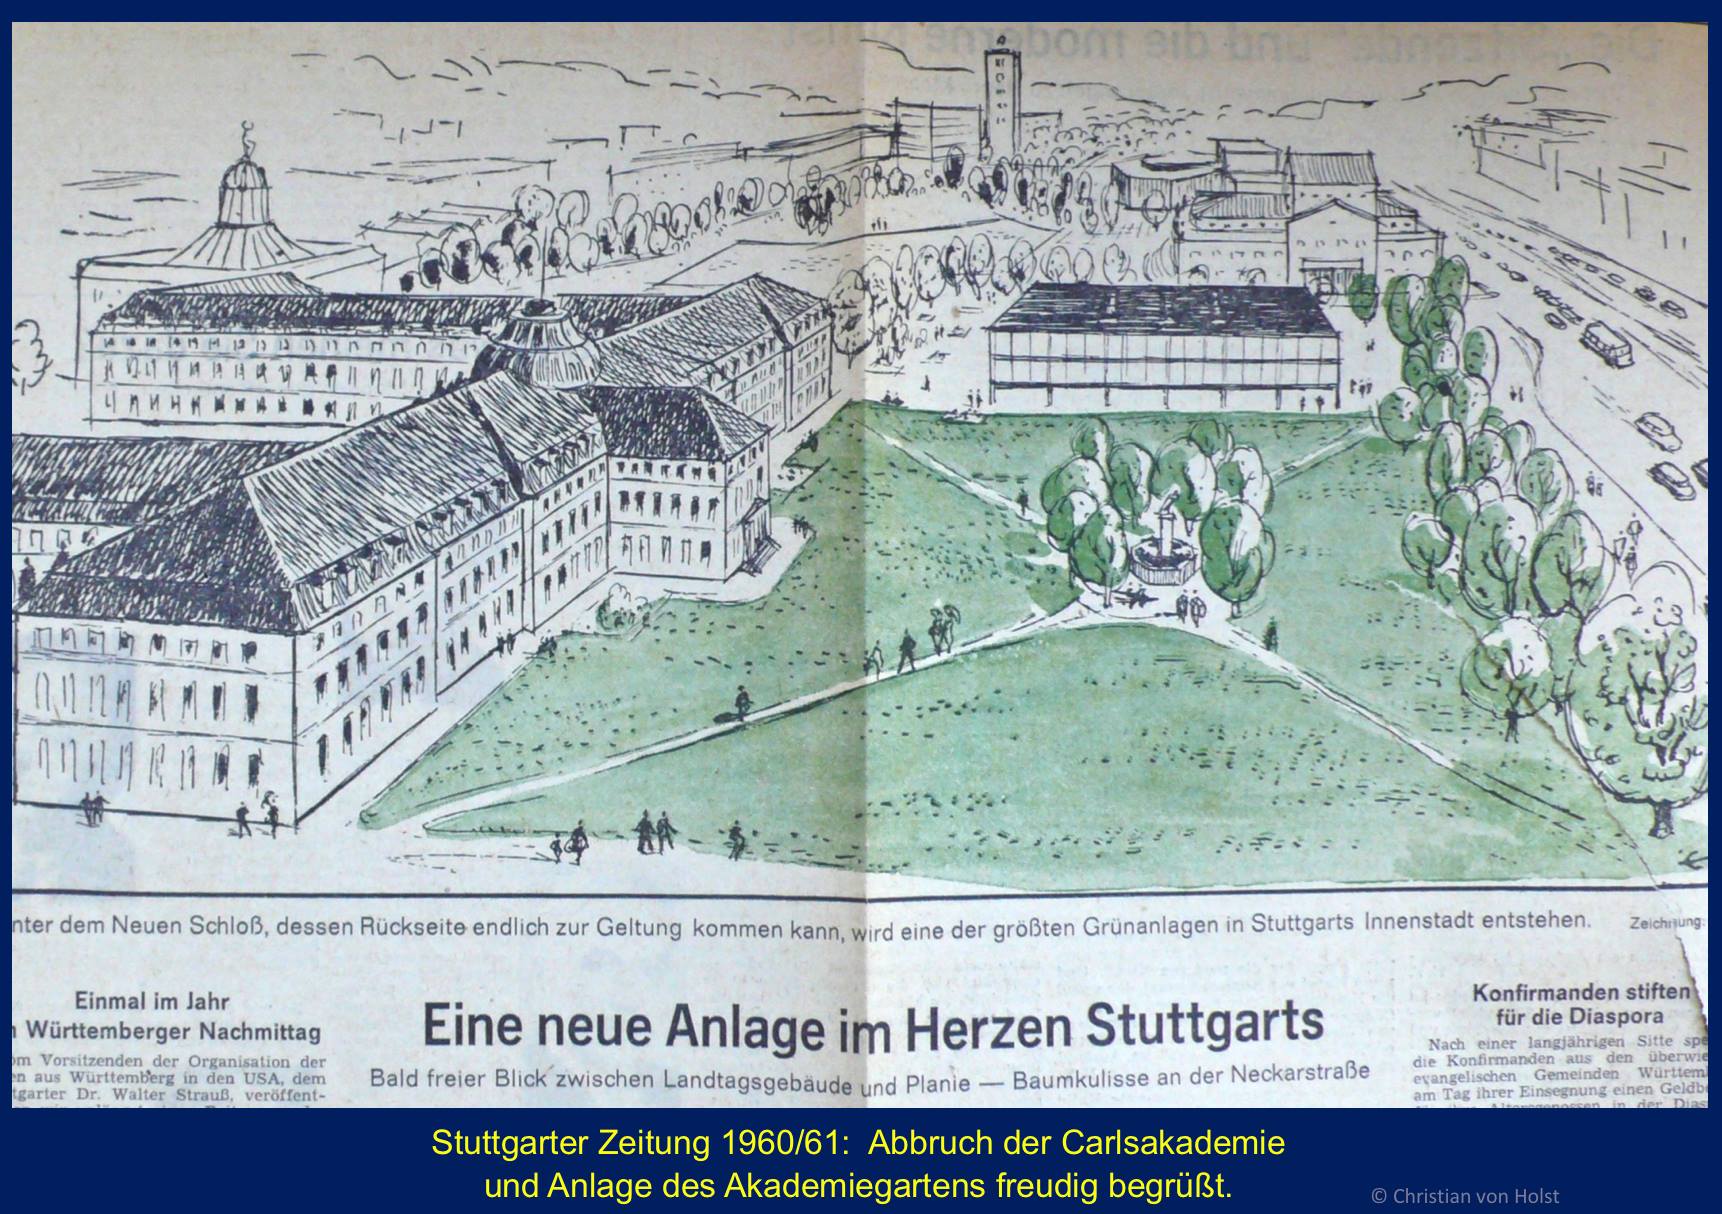 Carlsakademie: Akademiegarten und Löwenbrunnen – Skizze in der StZ 1960/61